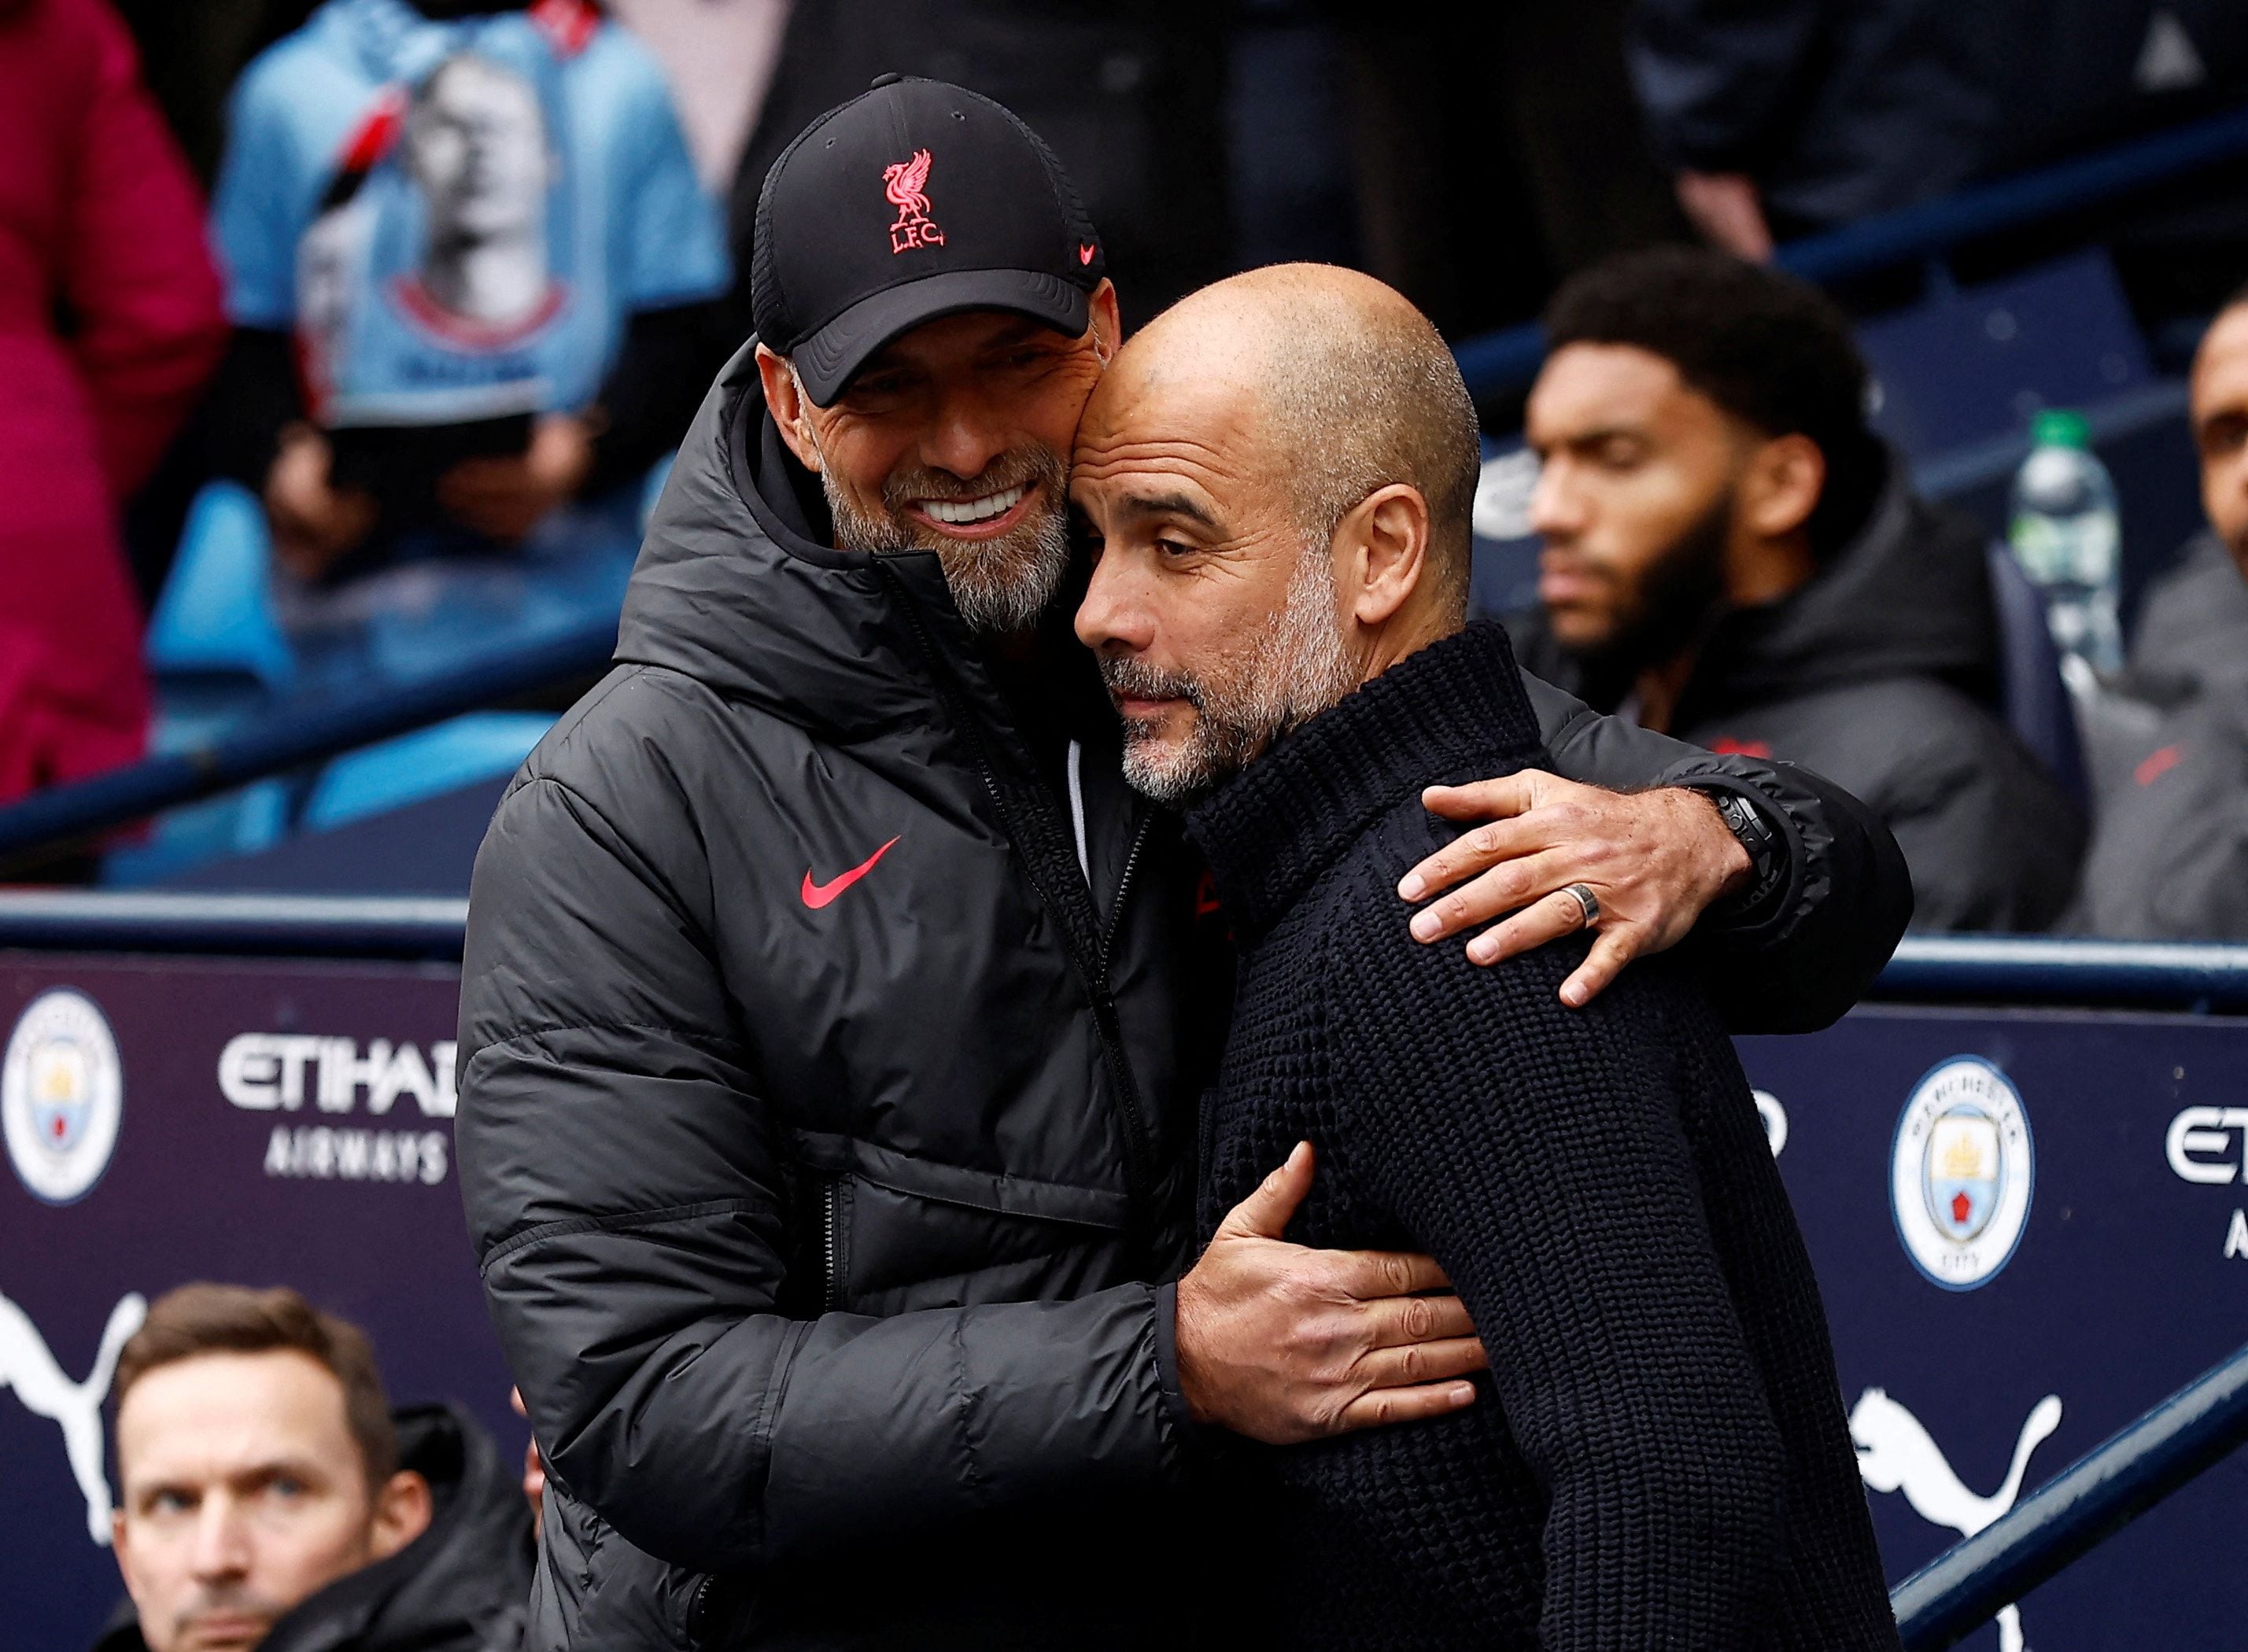 El saludo entre Klopp y Guardiola en uno de los tantos partidos entre Liverpool y Manchester City (Action Images via Reuters/Jason Cairnduff)